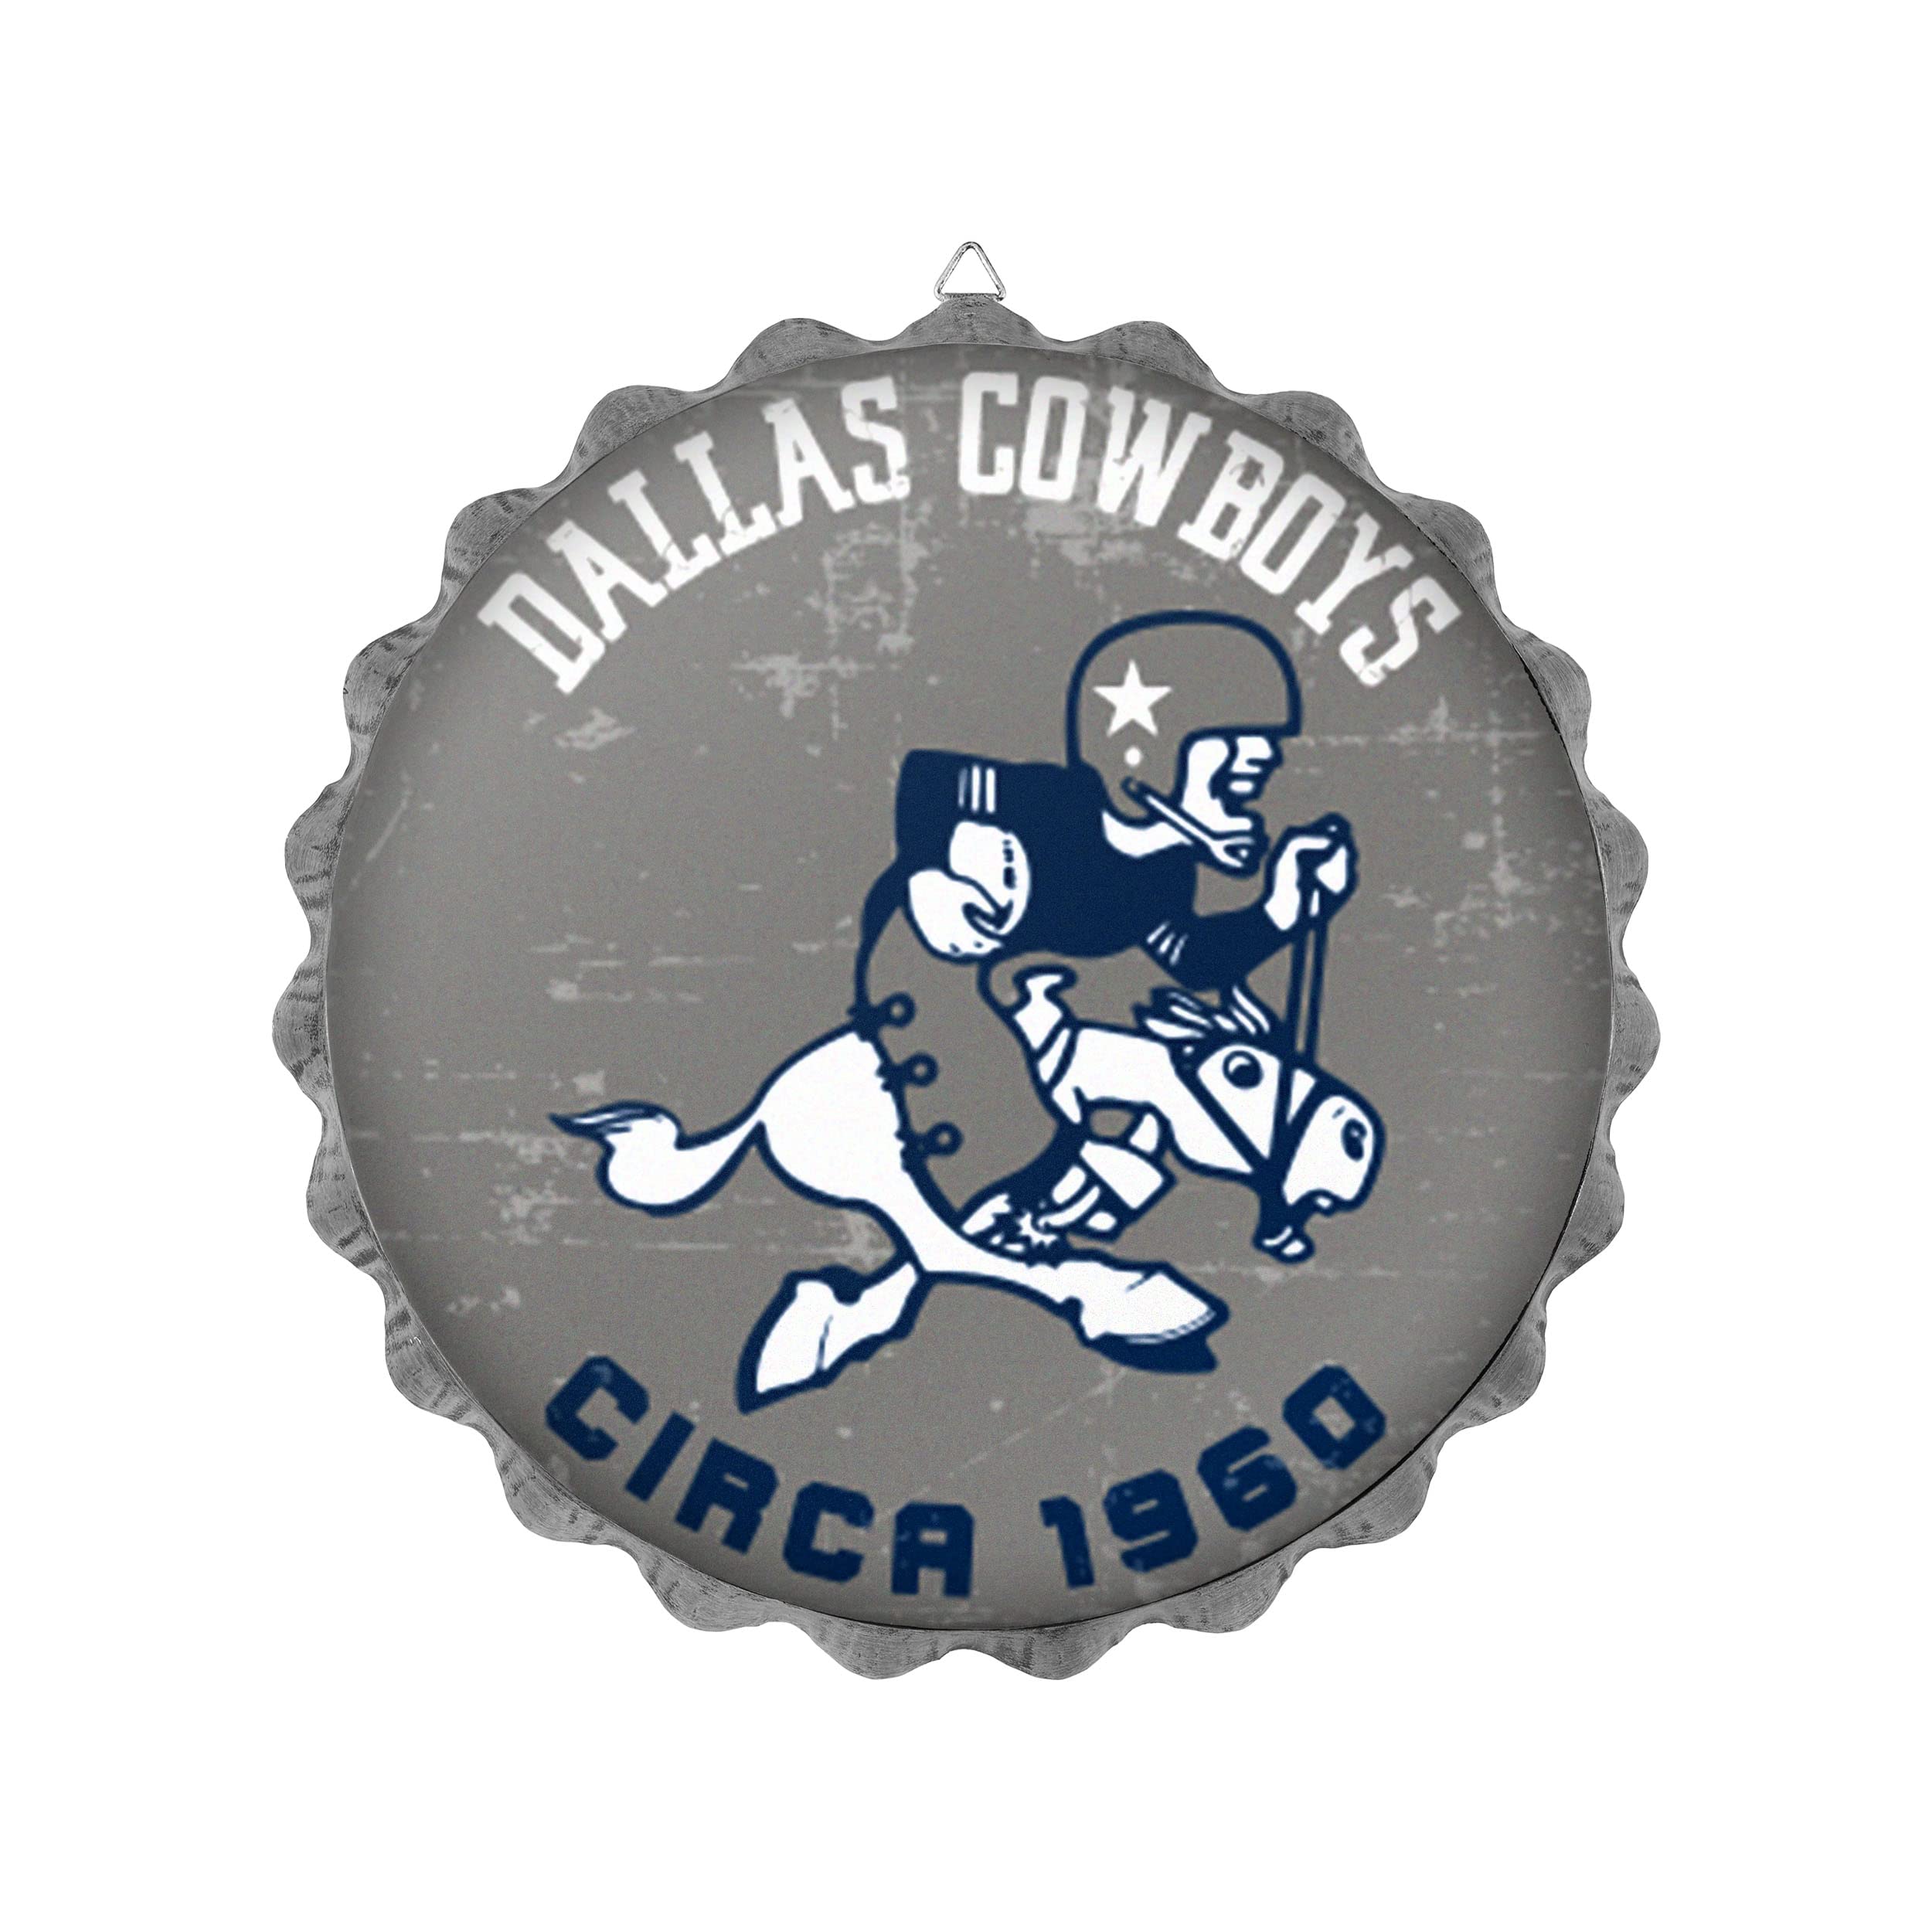 Foco Dallas Cowboys Nfl Retro Bottle Cap Wall Sign